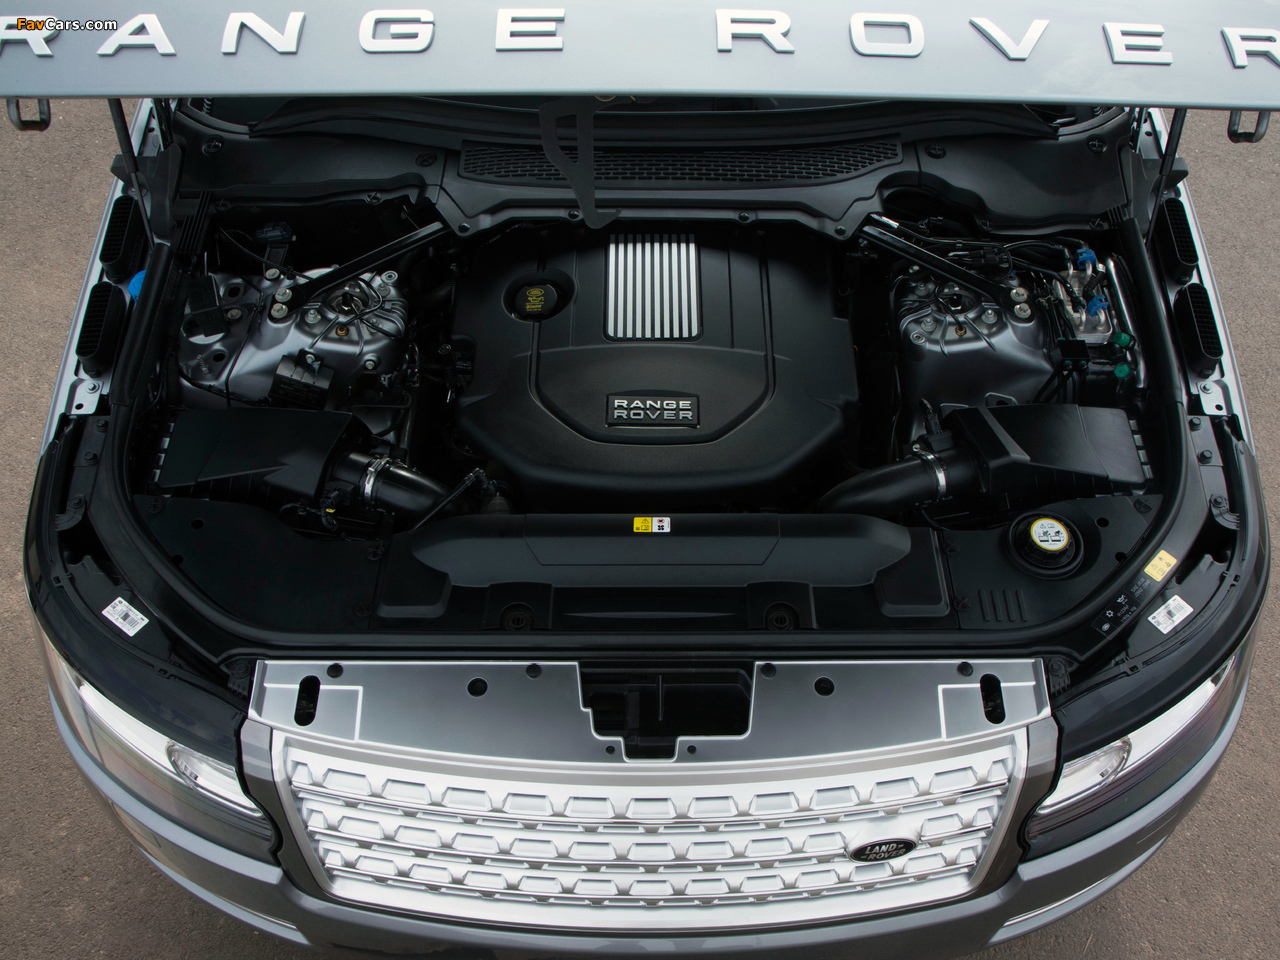 Range Rover Vogue TDV6 UK-spec (L405) 2012 pictures (1280 x 960)